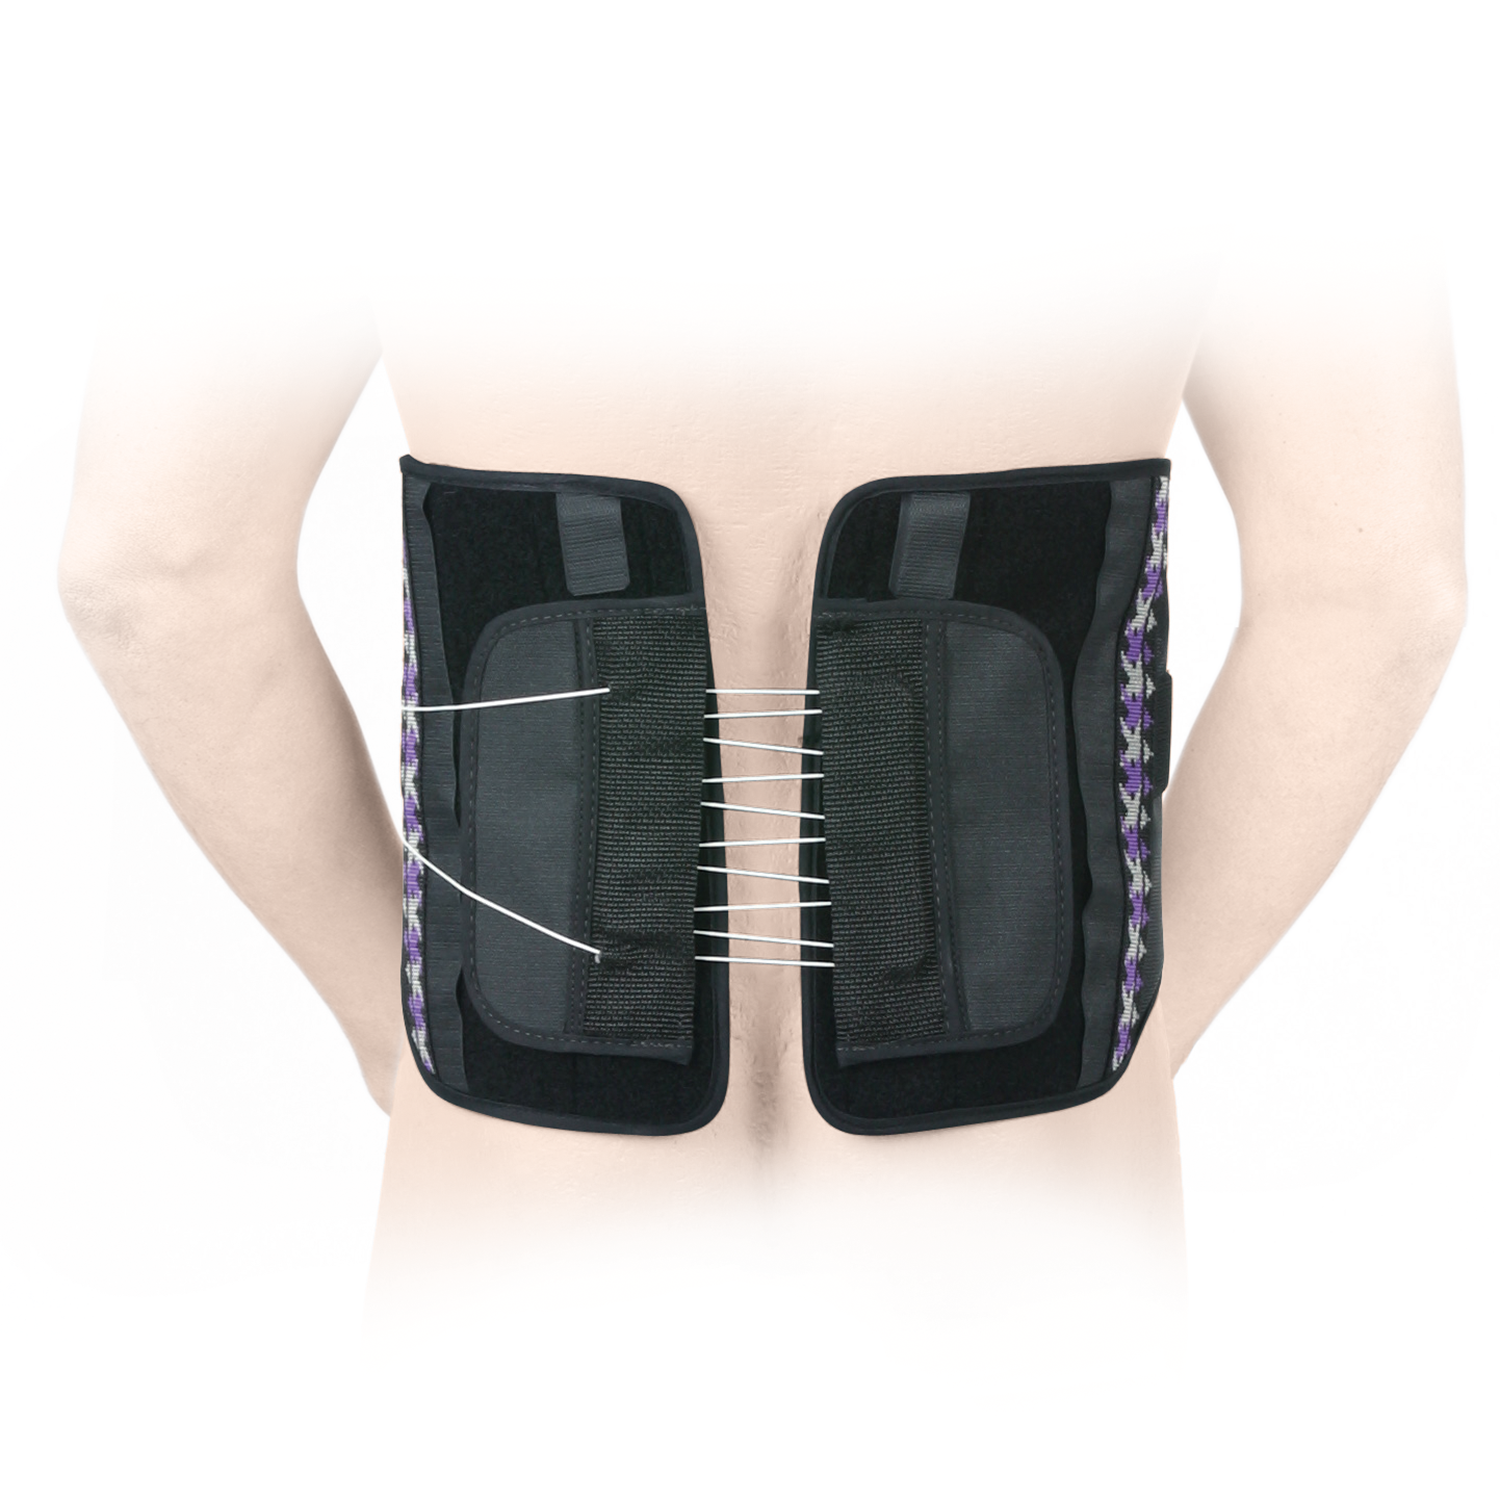 Produktbild ORMED® Lumbostar®, Rückenorthese zur Entlastung, Korrektur und Stabilisierung der LWS